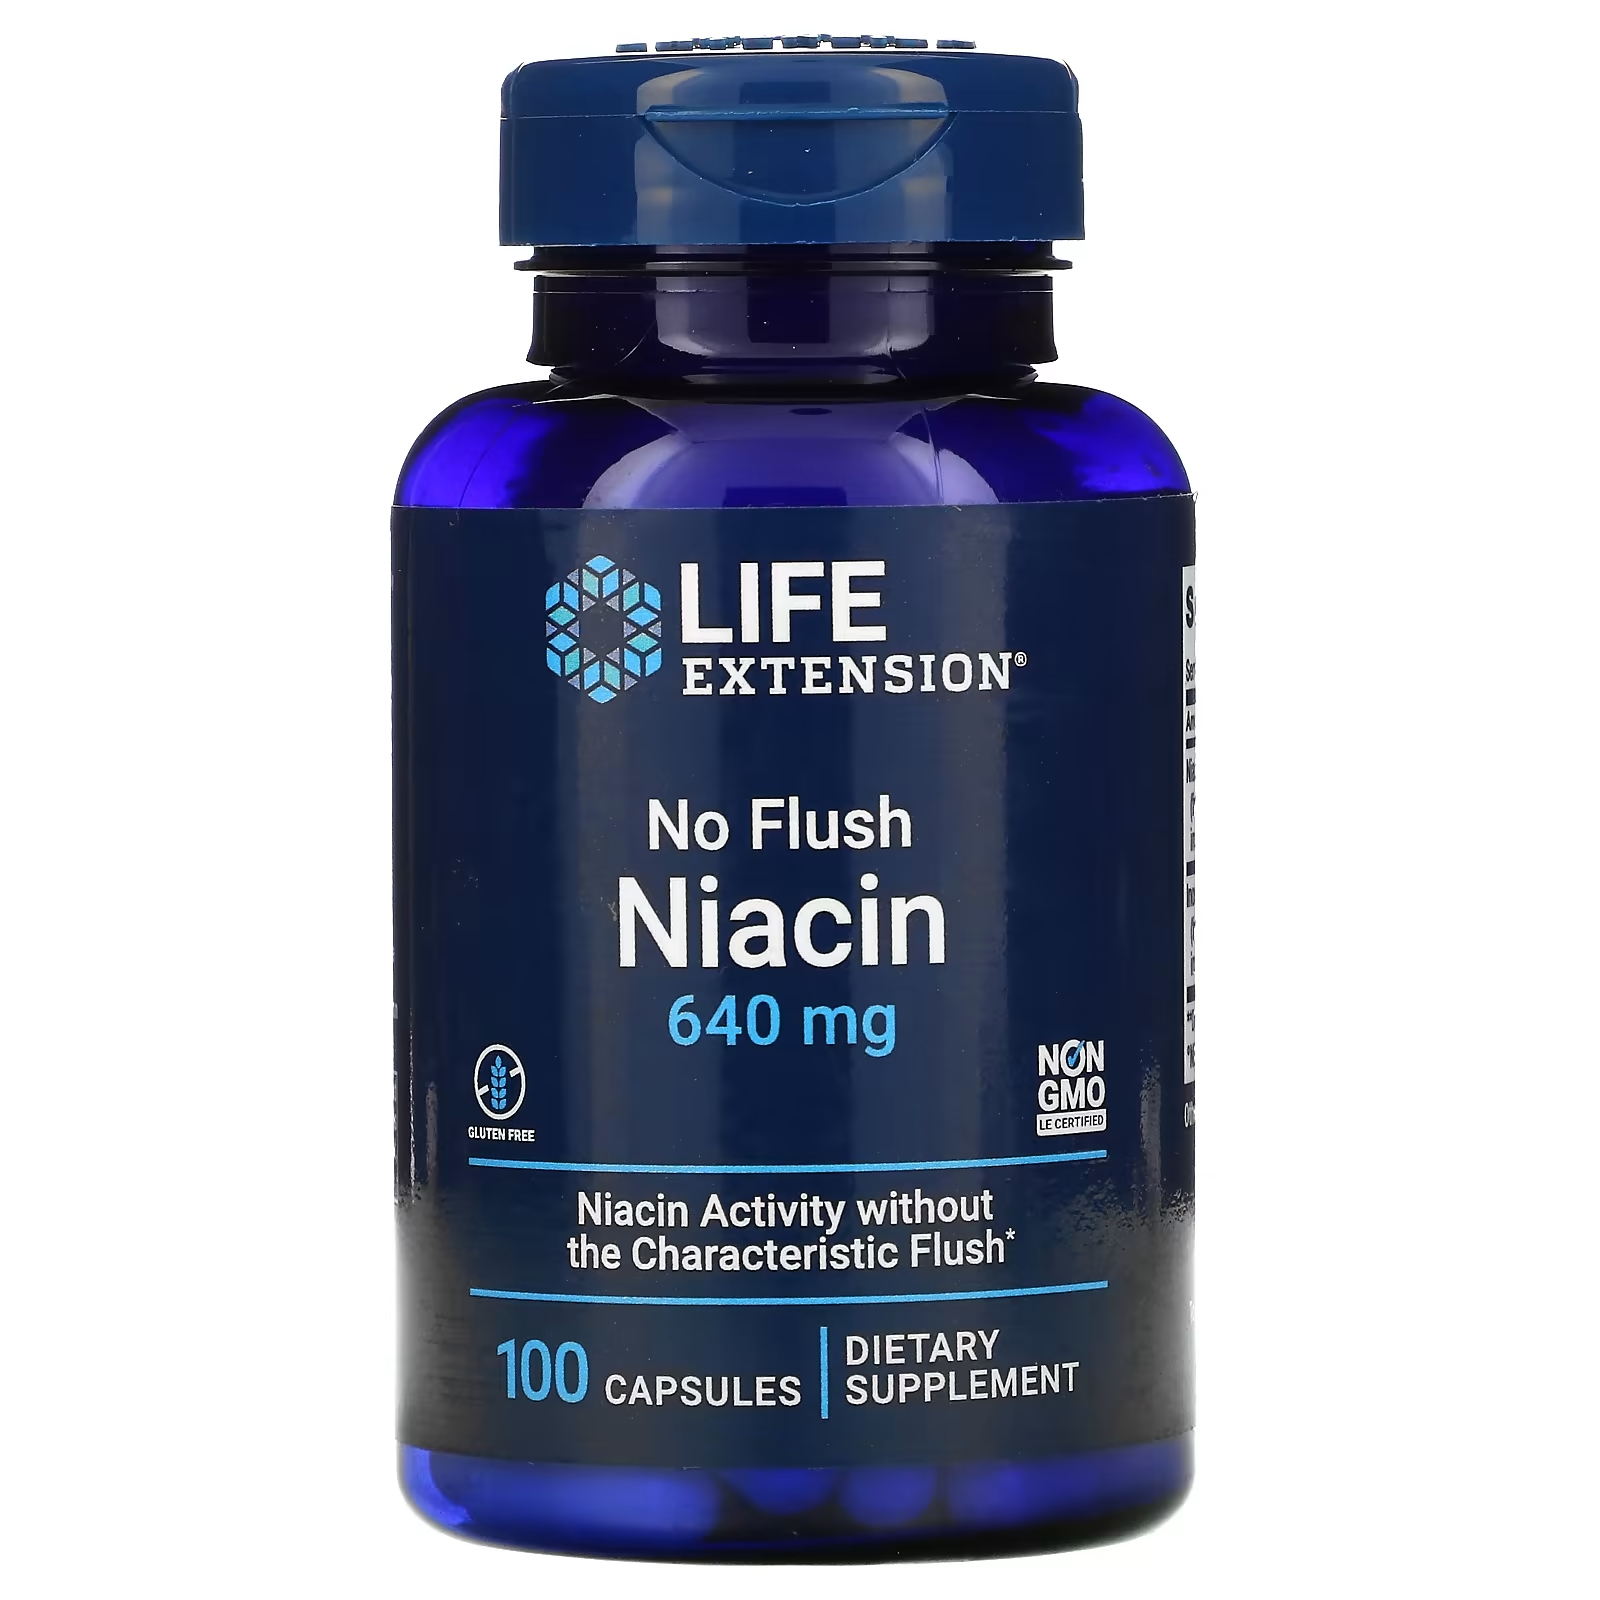 Ниацин Life Extension не вызывает приливов крови, 100 капсул life extension ниацин не вызывает приливов крови 640 мг 100 капсул